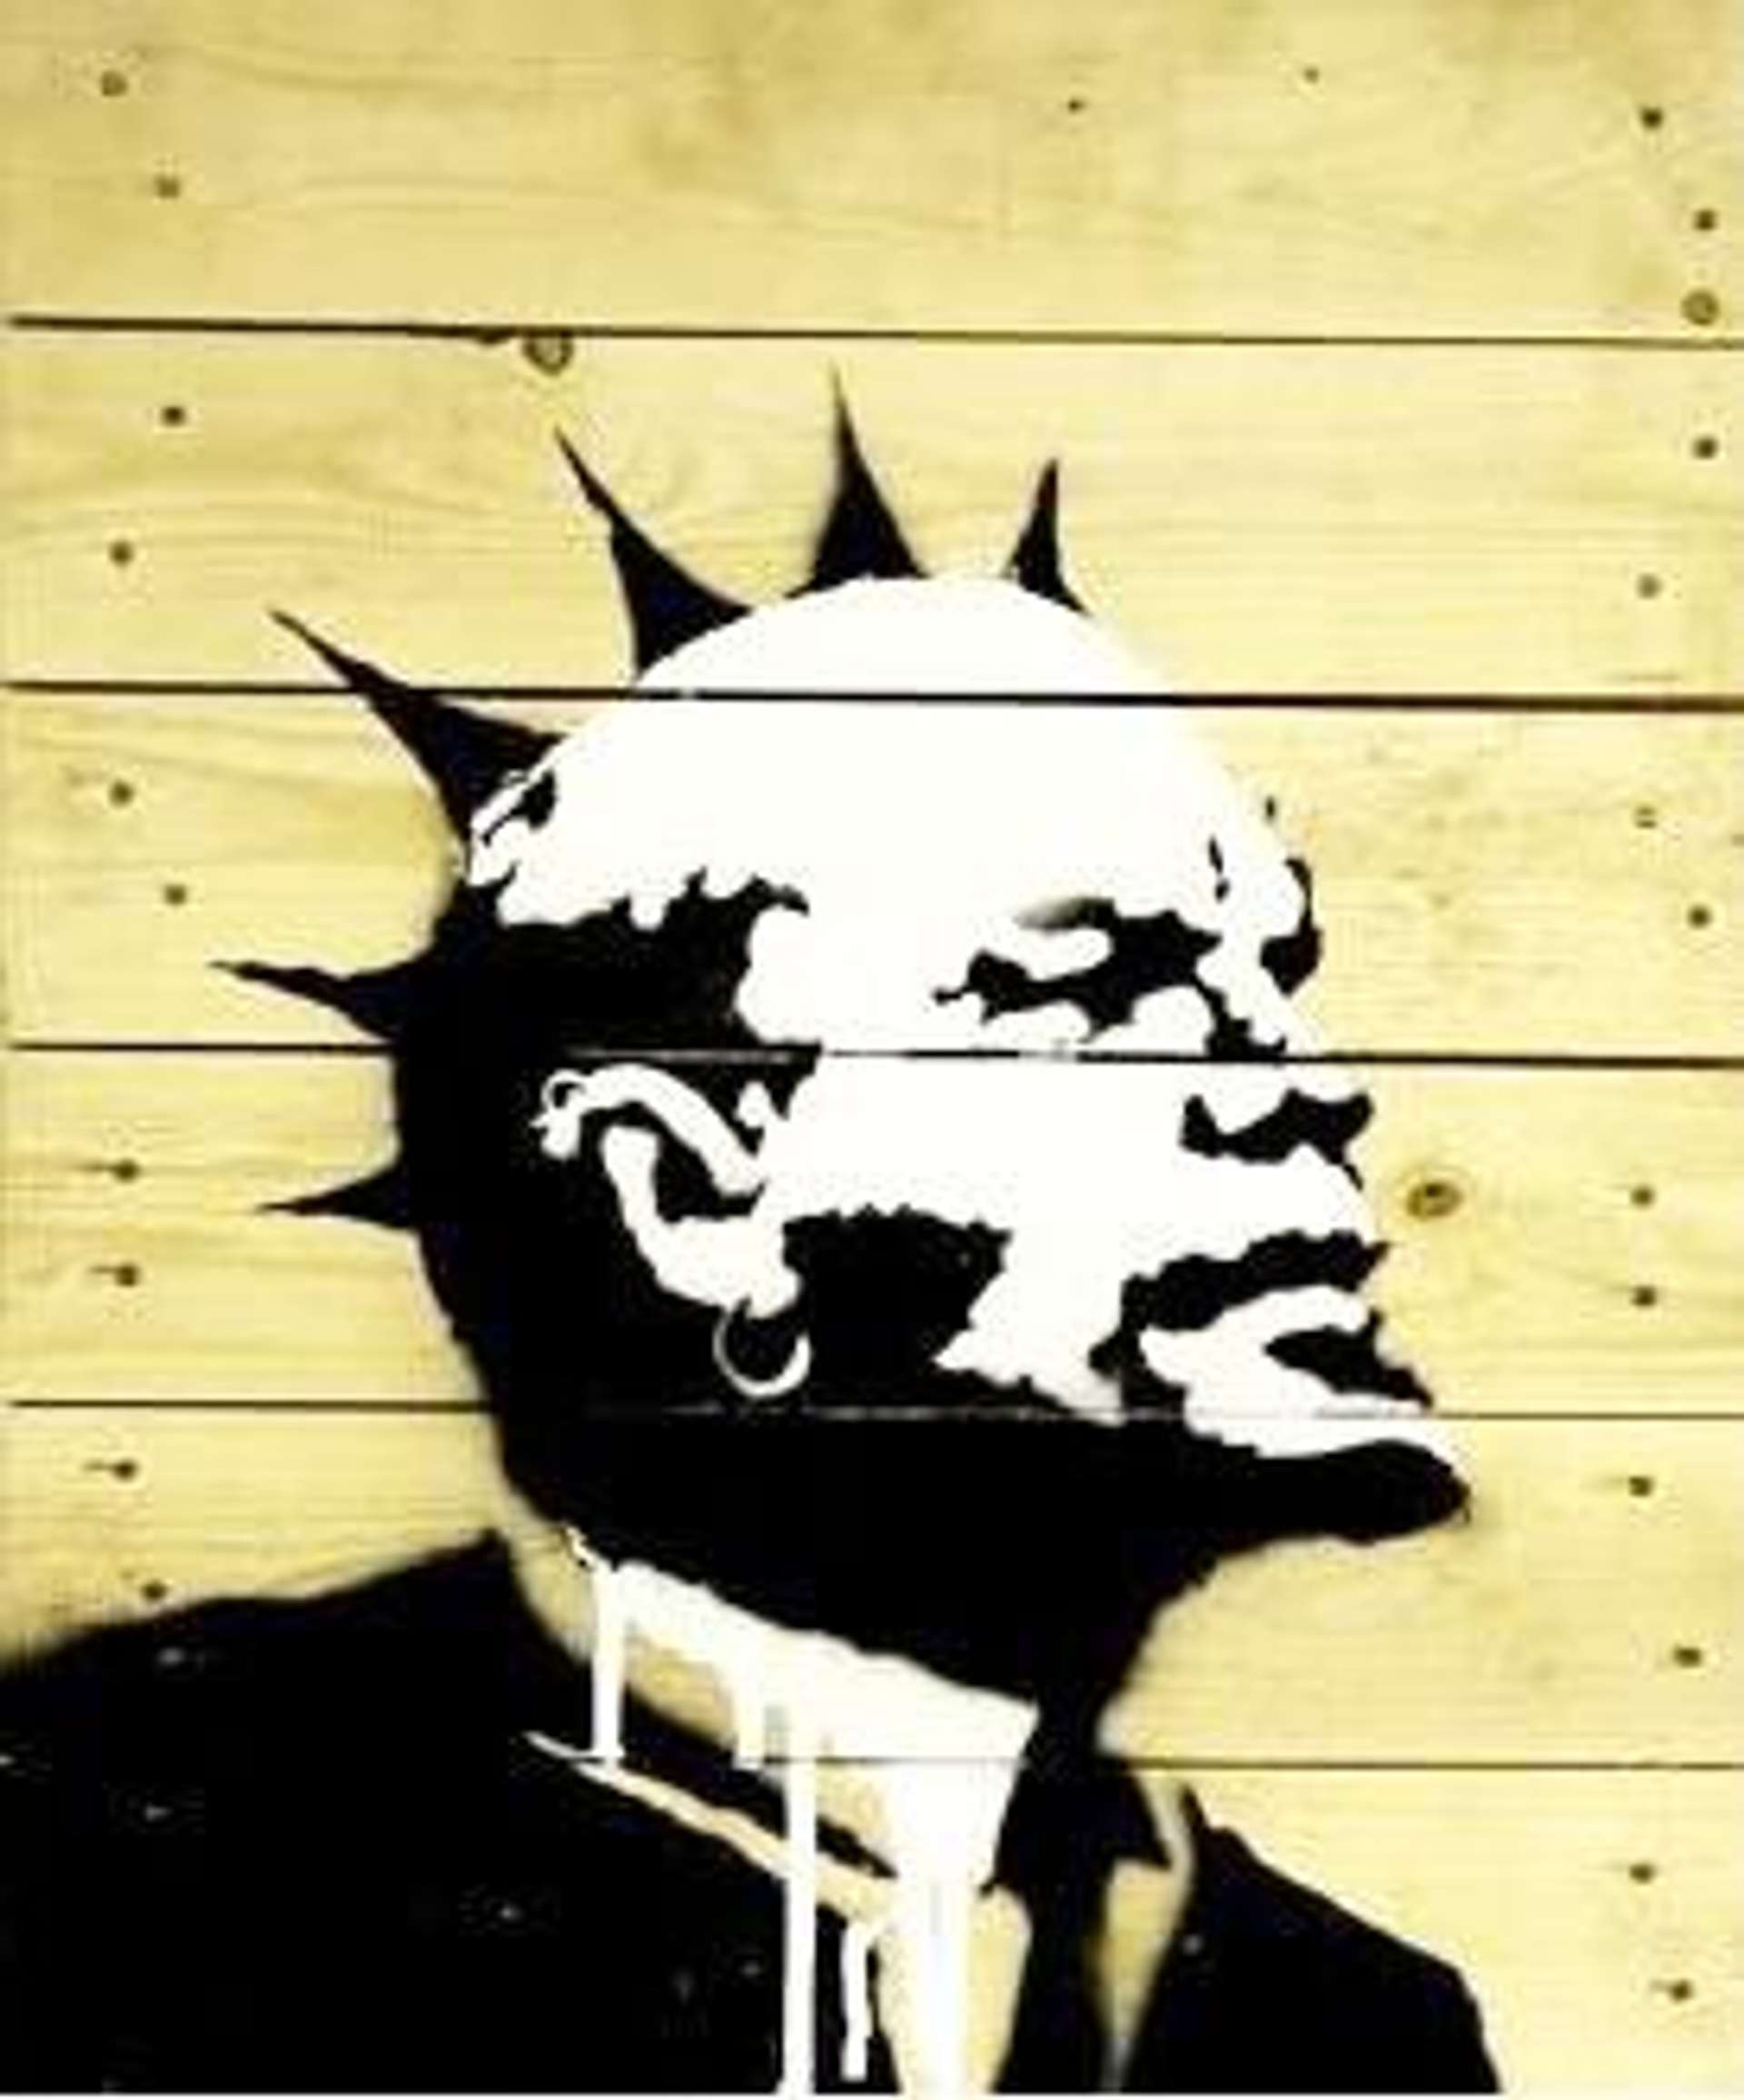 Lenin On Pallet by Banksy